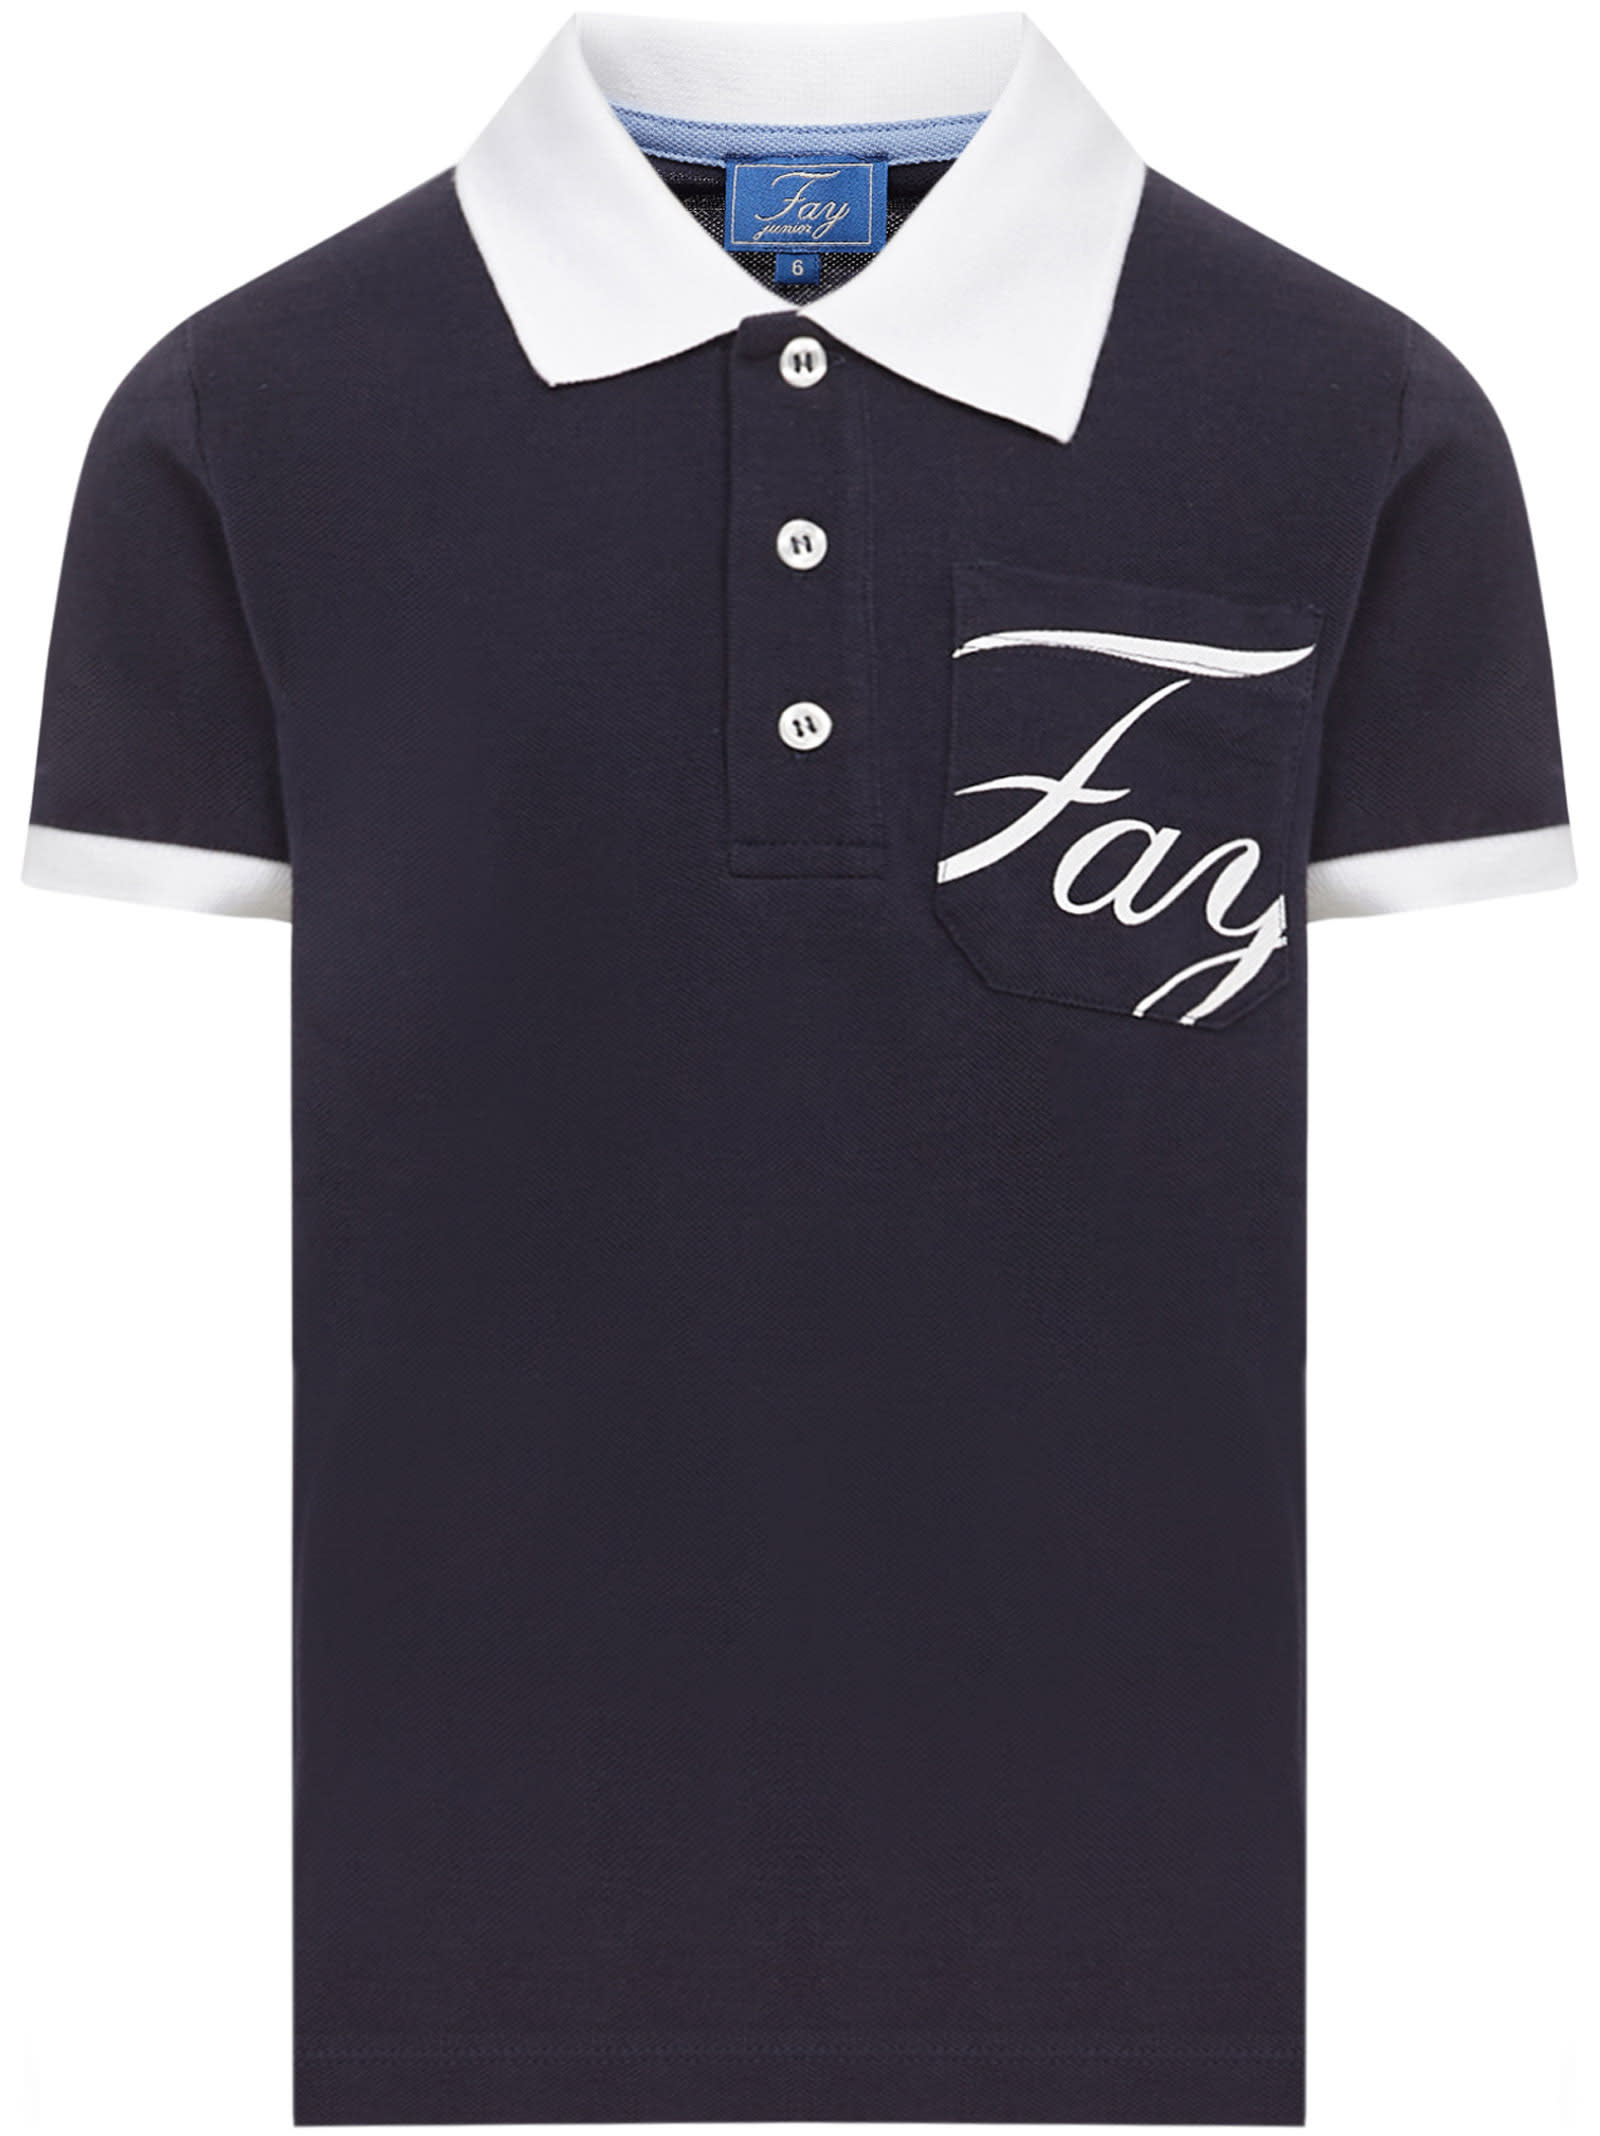 Fay Kids Polo Shirt